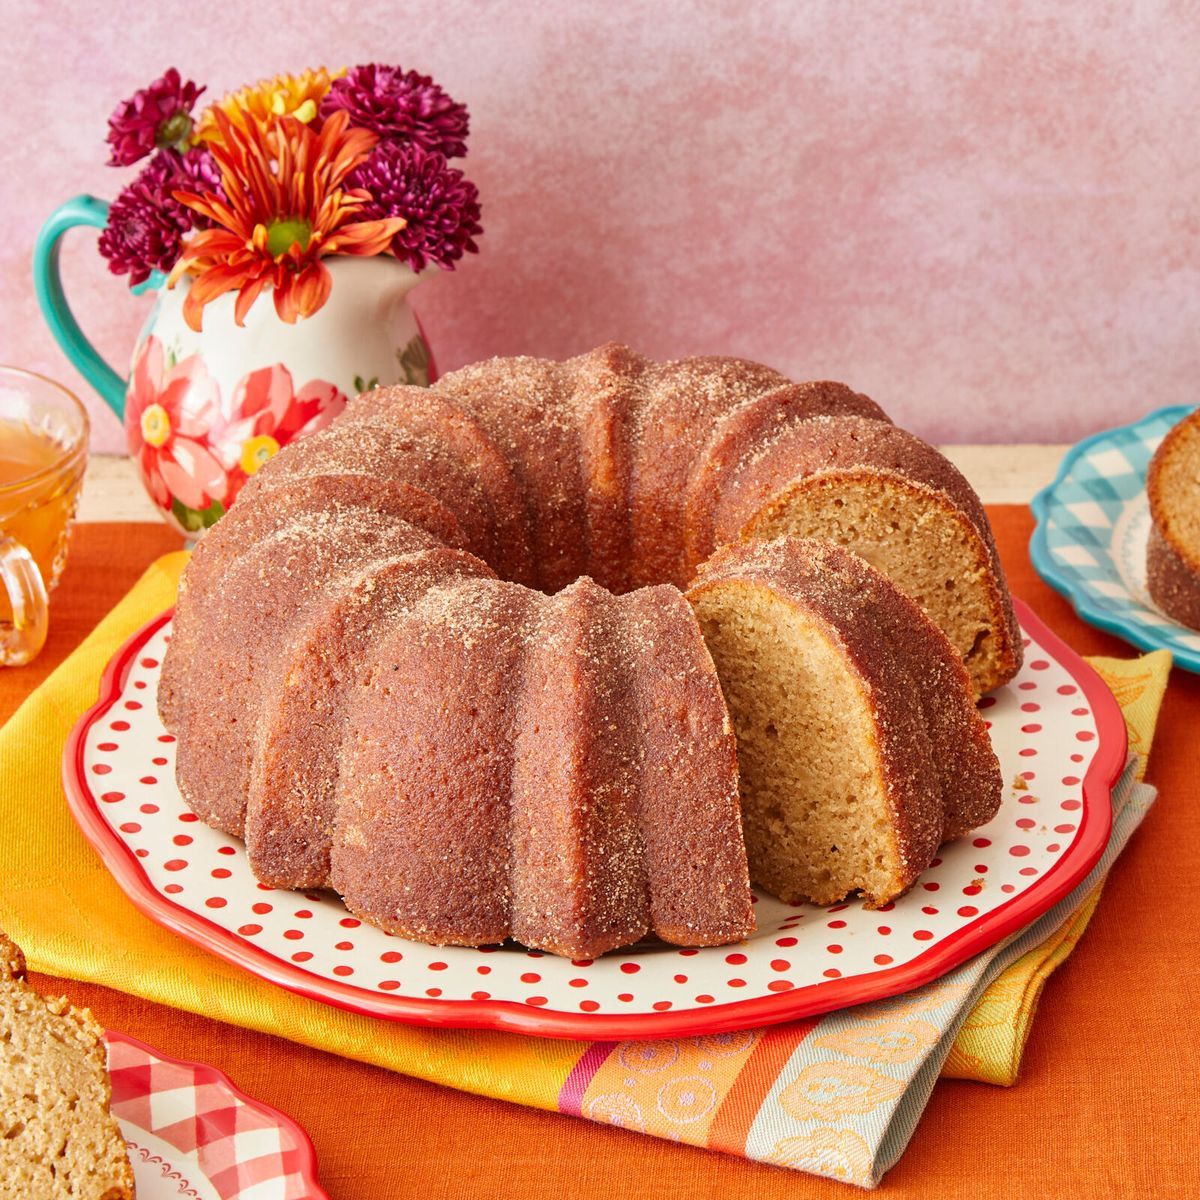 https://hips.hearstapps.com/hmg-prod/images/bundt-cake-recipes-apple-cider-donut-cake-recipe-656a34d921545.jpeg